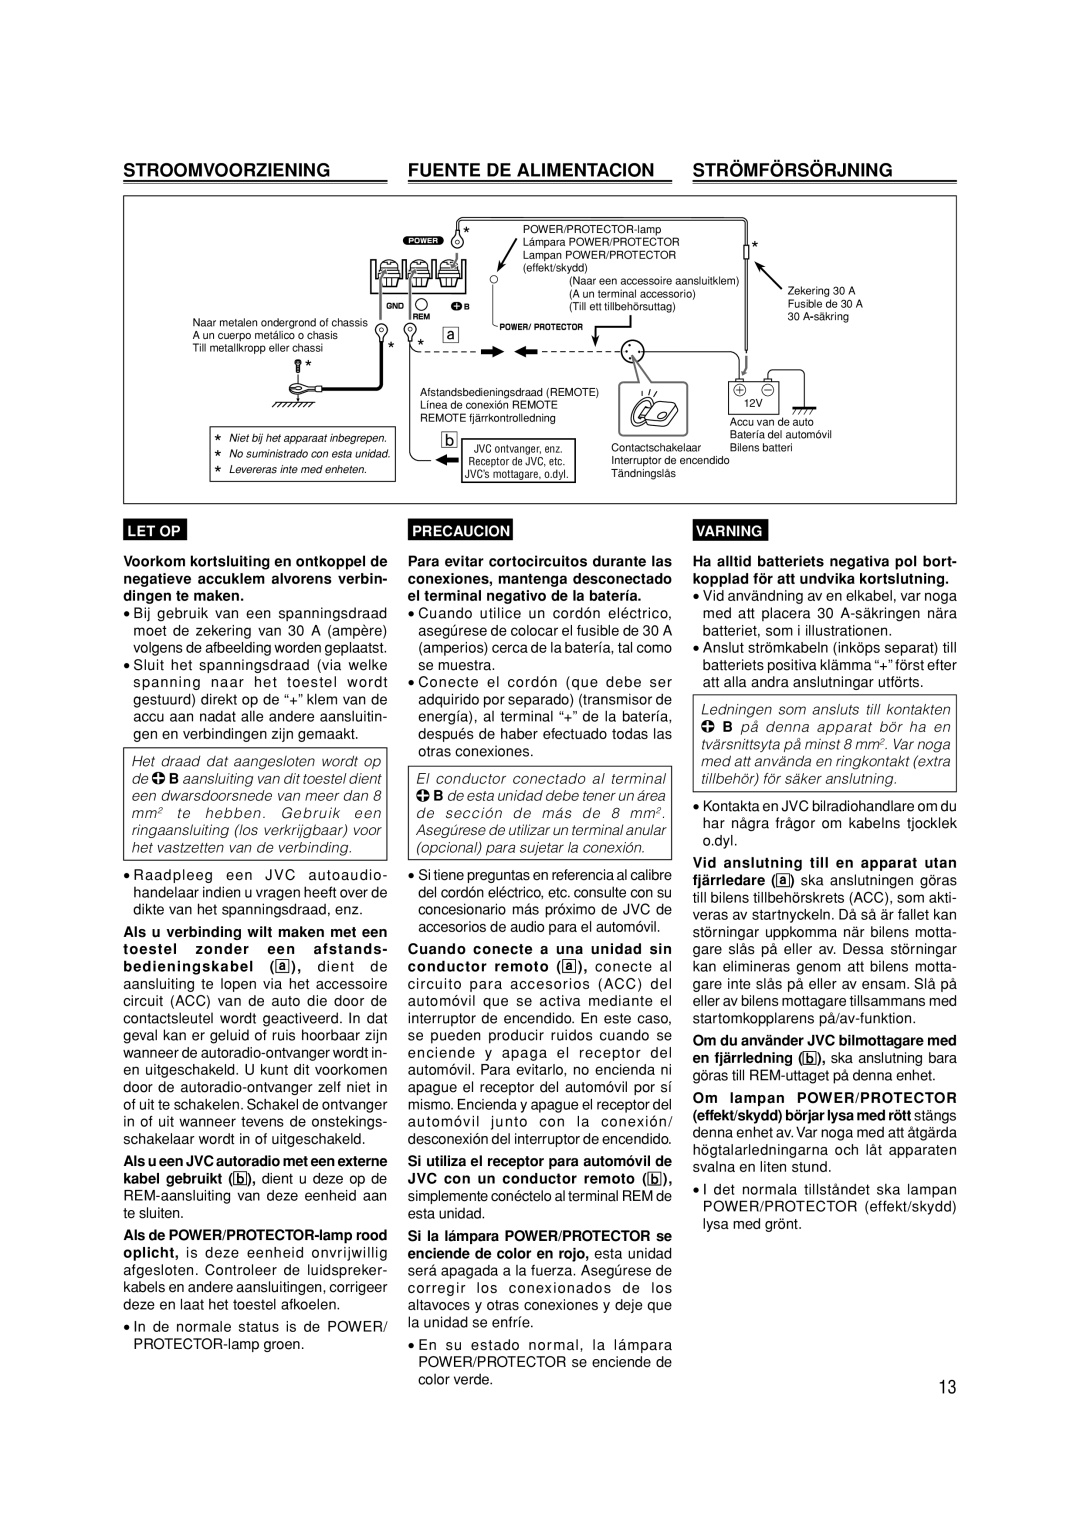 JVC KS-AX4550 manual Stroomvoorziening, Fuente De Alimentacion, Strömförsörjning, Let Op, Precaucion, Varning 